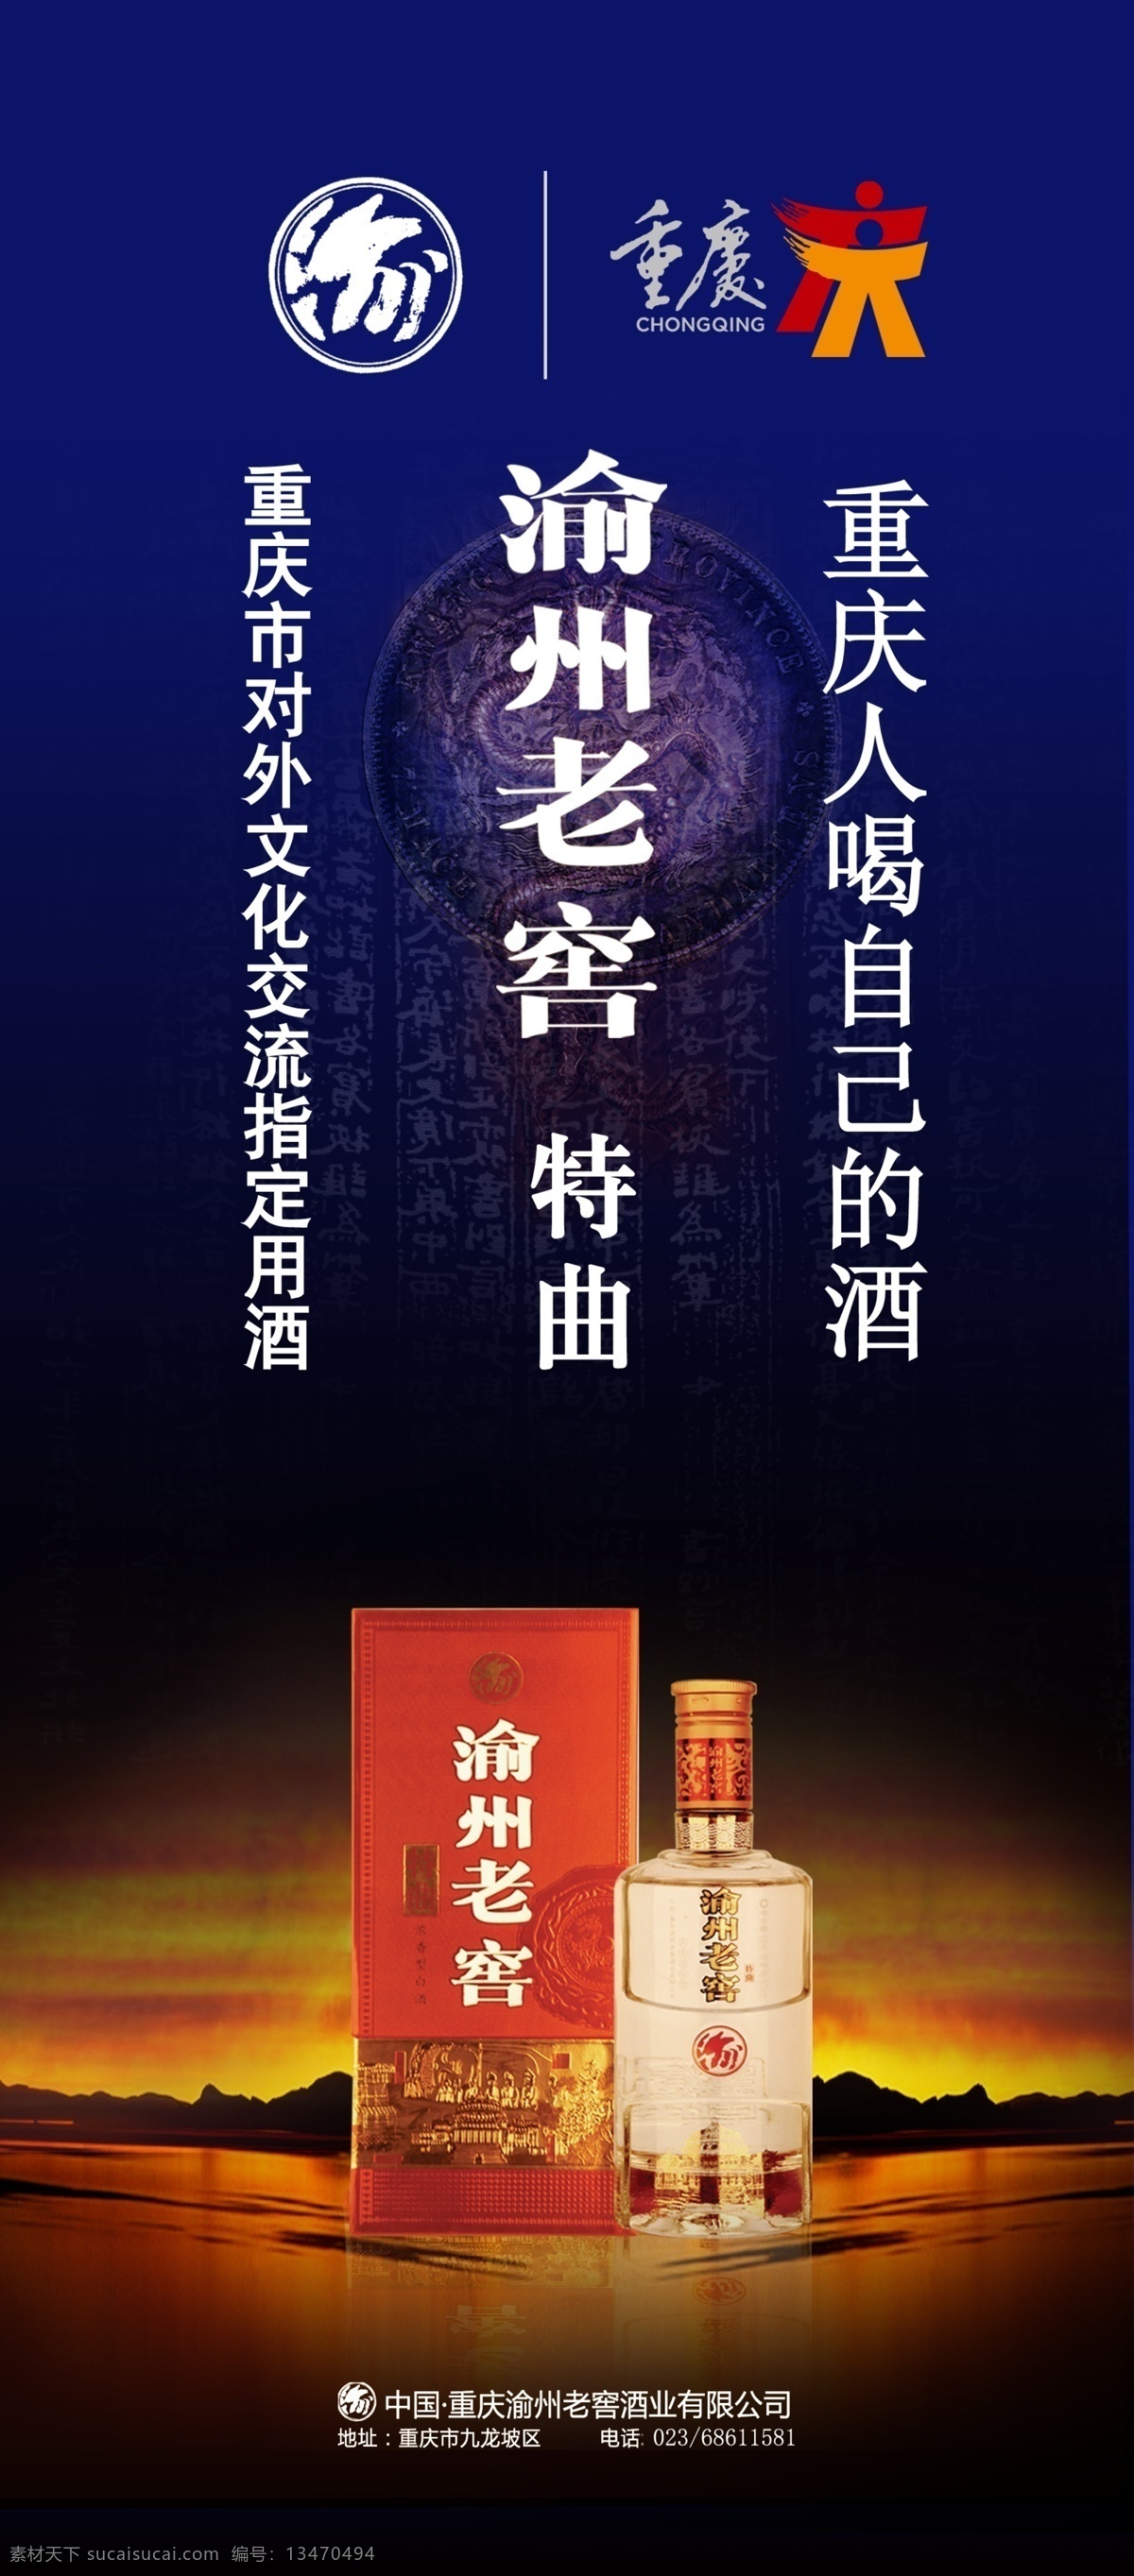 渝州老窖 特曲 重庆白酒 特供 白酒广告 广告海报设计